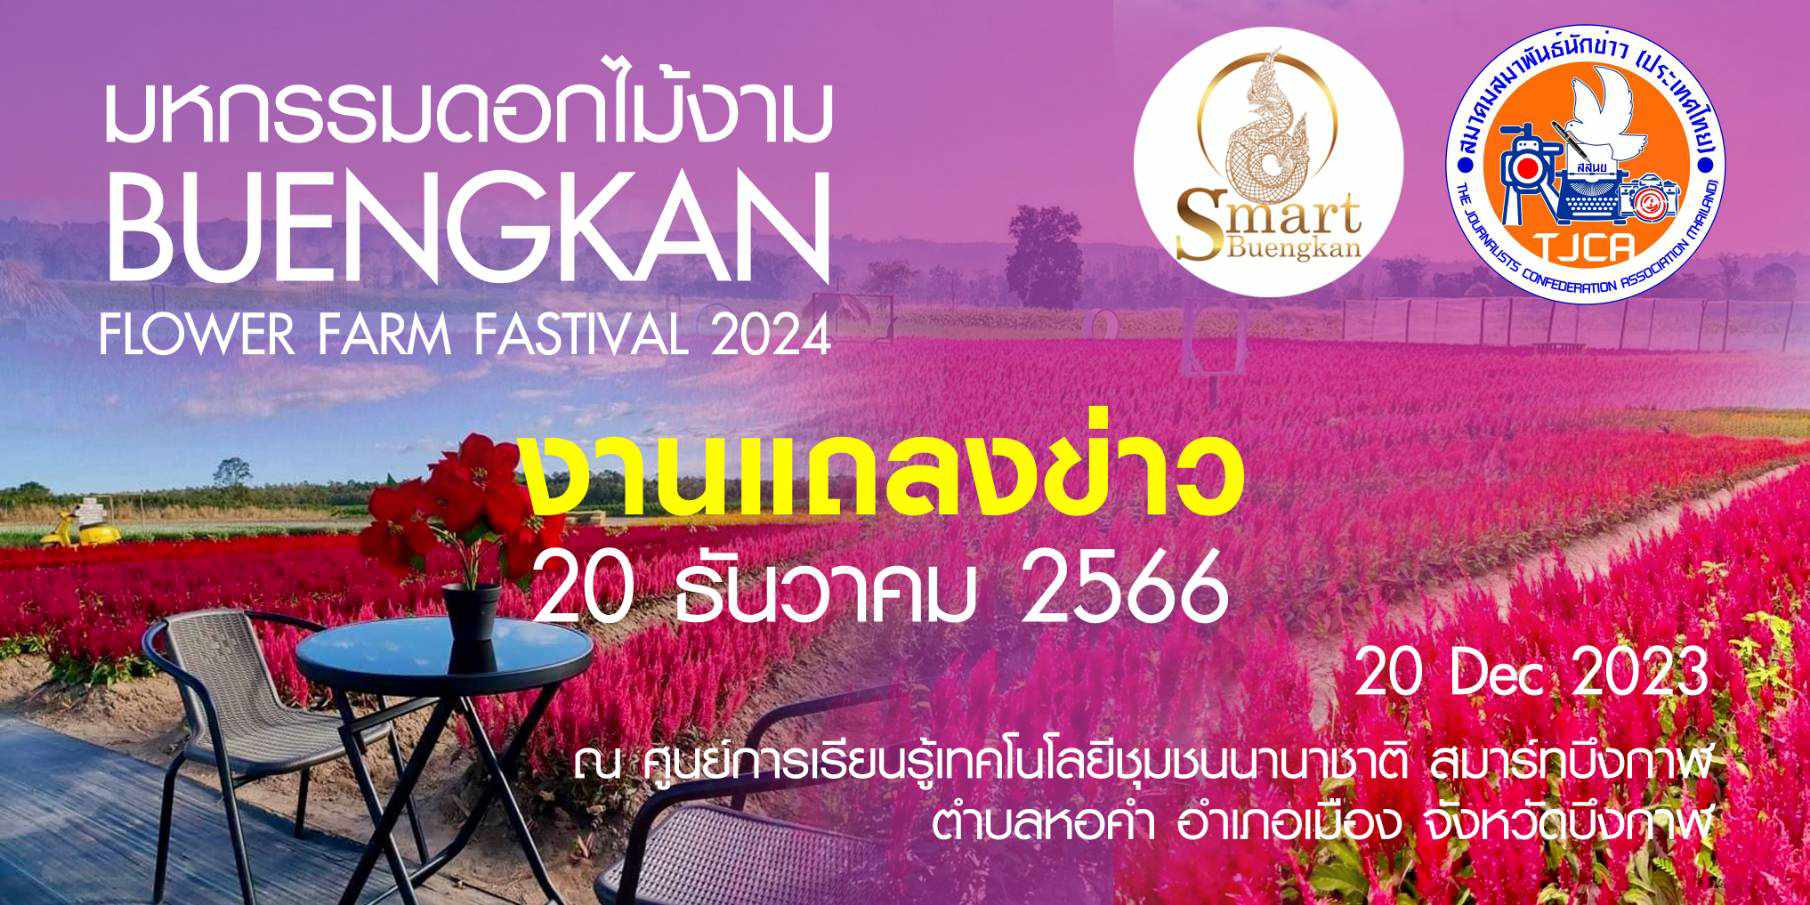 งานแถลงข่าว “Smart Buengkan Flower Farm Festival 2024” ในวันพุธ ที่ 20ธันวาคม 2566เวลา 17.00น.ณ ศูนย์การเรียนรู้เทคโนโยลีชุมชนนานาชาติ สมาร์ทบึงกาฬ ตำบลหอคำ อำเภอเมือง จังหวัดบึงกาฬ